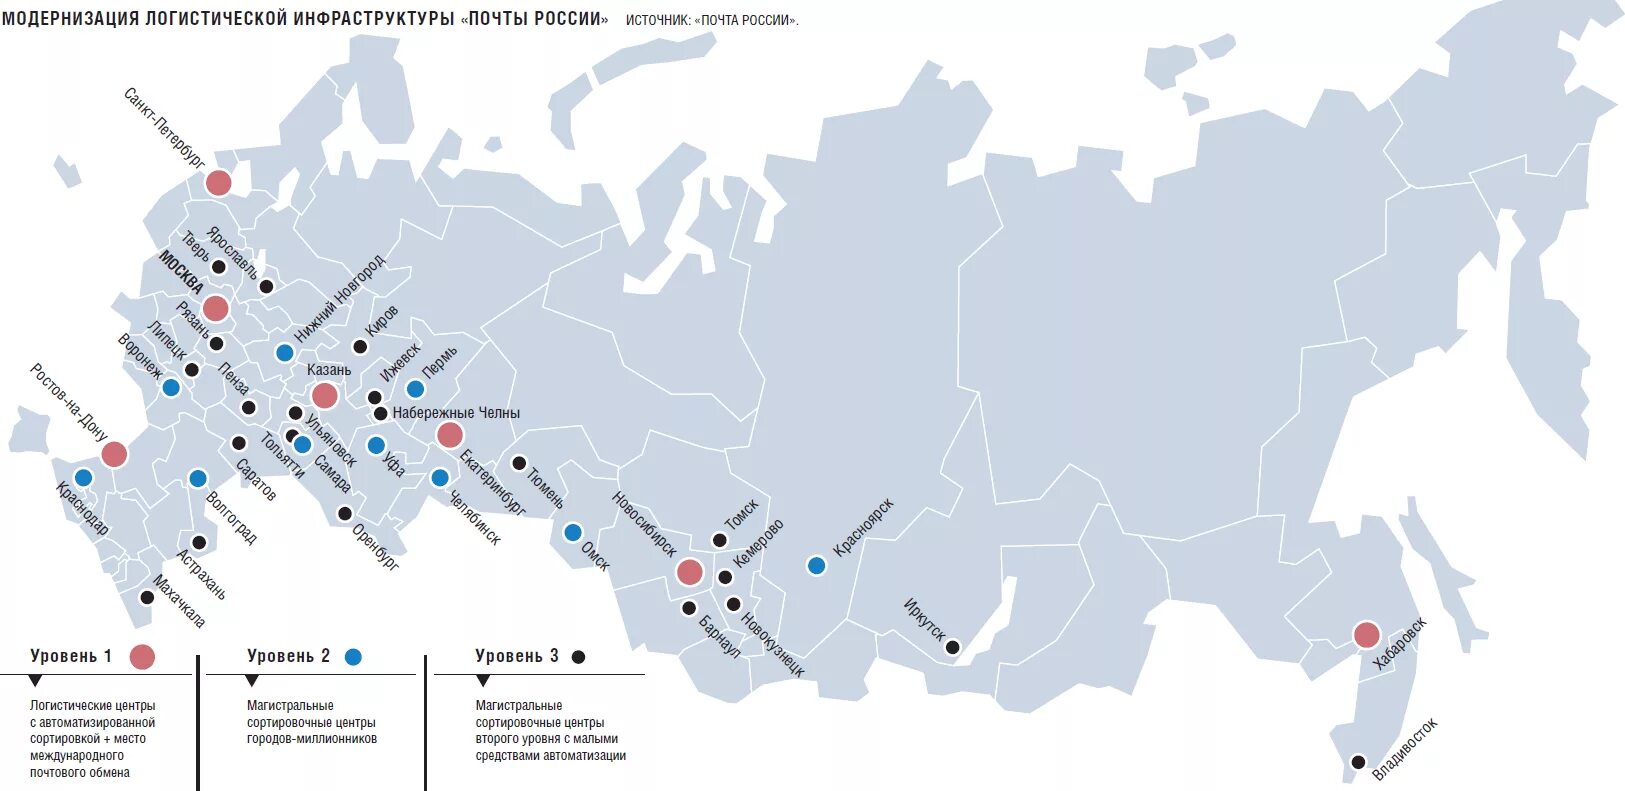 Крупные аэропорты России на карте. 10 Крупных аэропортов в России на карте. Сортировочные центры почты России на карте. Логистическая карта России. Города миллионеры урала на карте